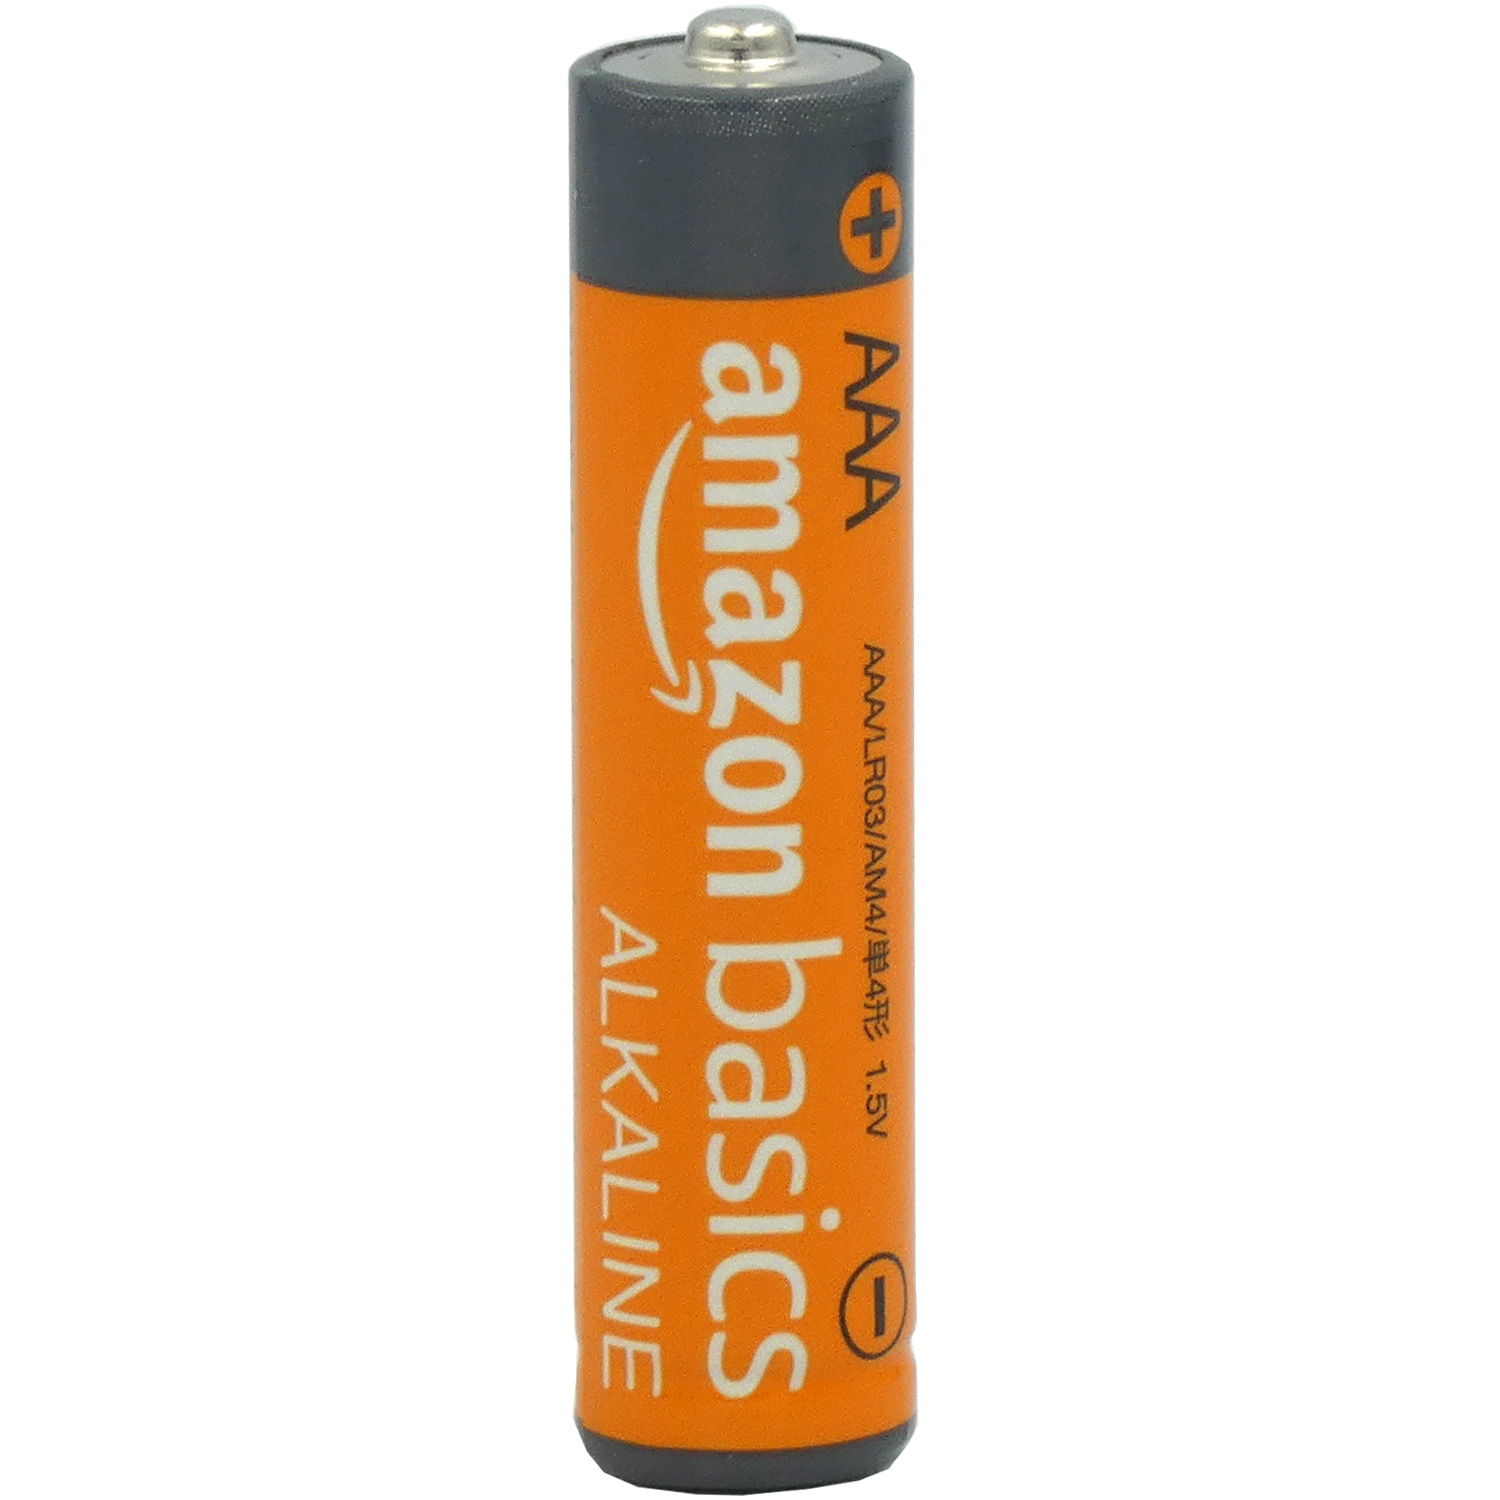 Test: amazon basics Alkaline AAA/LR03/AM4 Batterie Modell 2023